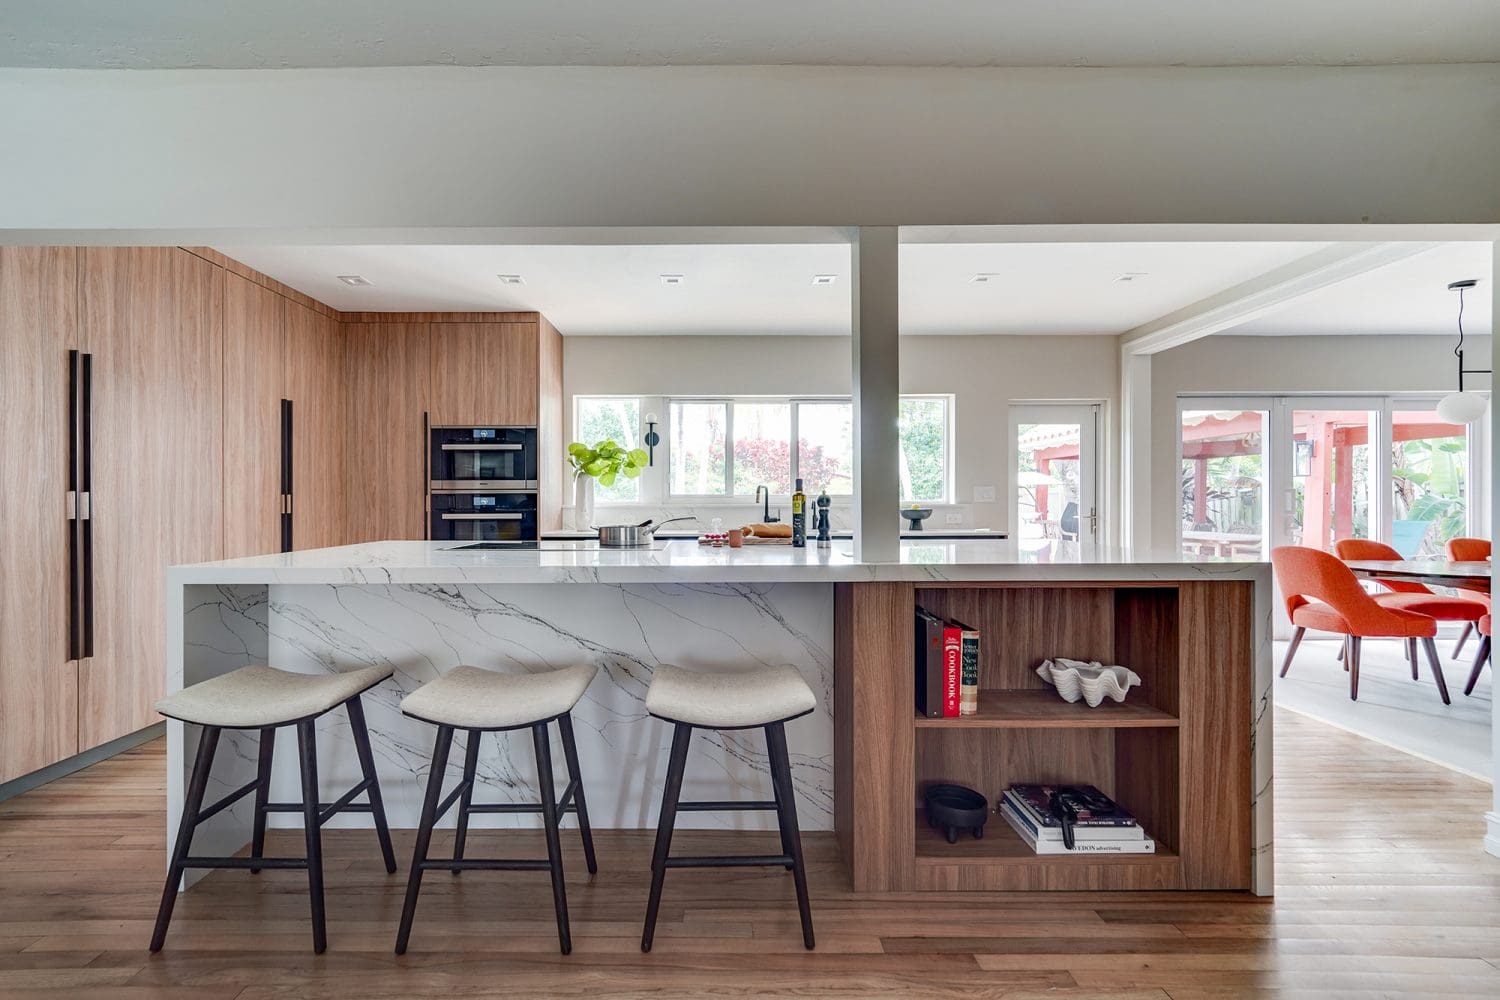 Modern luxury kitchen by STUDIO 818 interior design & build management: kitchen island view